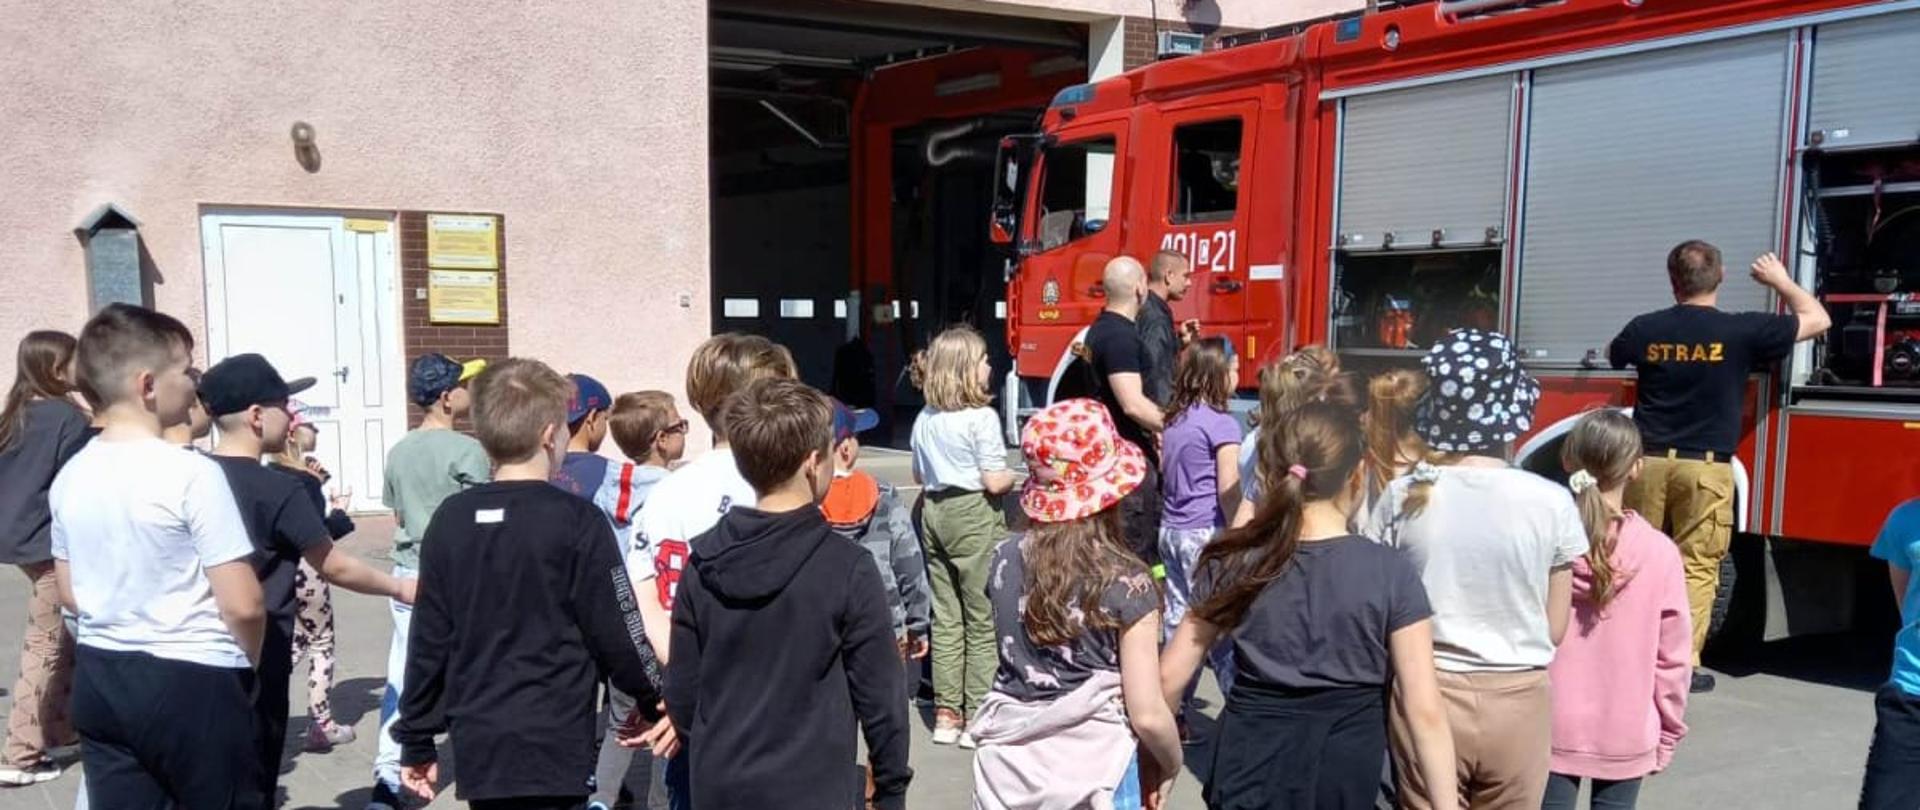 Strażacy wraz z dziećmi na tle budynku JRG oraz samochodu pożarniczego opowiadający na temat pracy w PSP